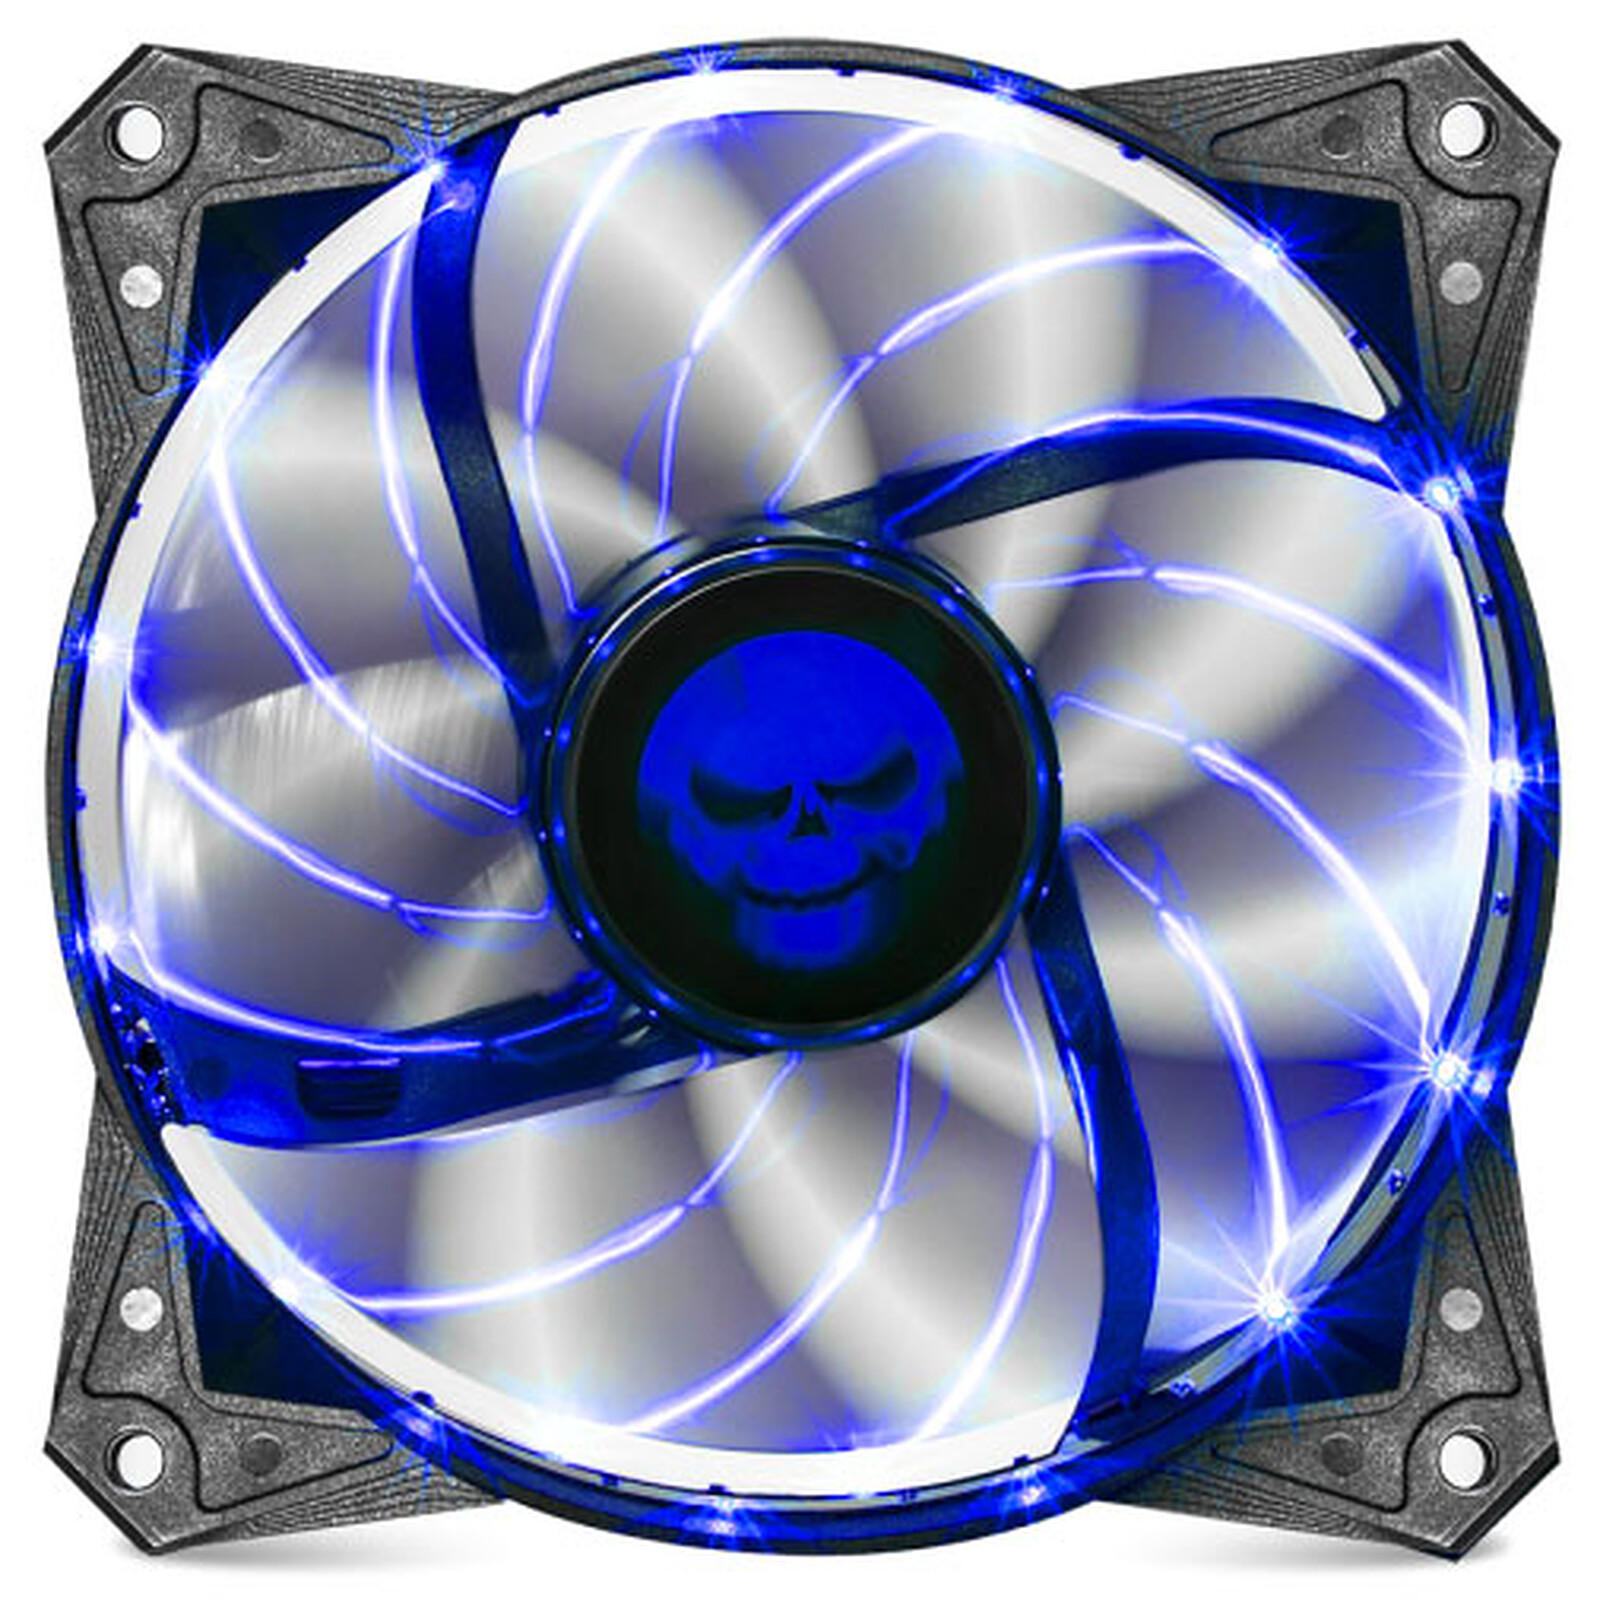 Spirit of Gamer AirFlow 120 mm Bleu - Ventilateur boîtier - Garantie 3 ans  LDLC